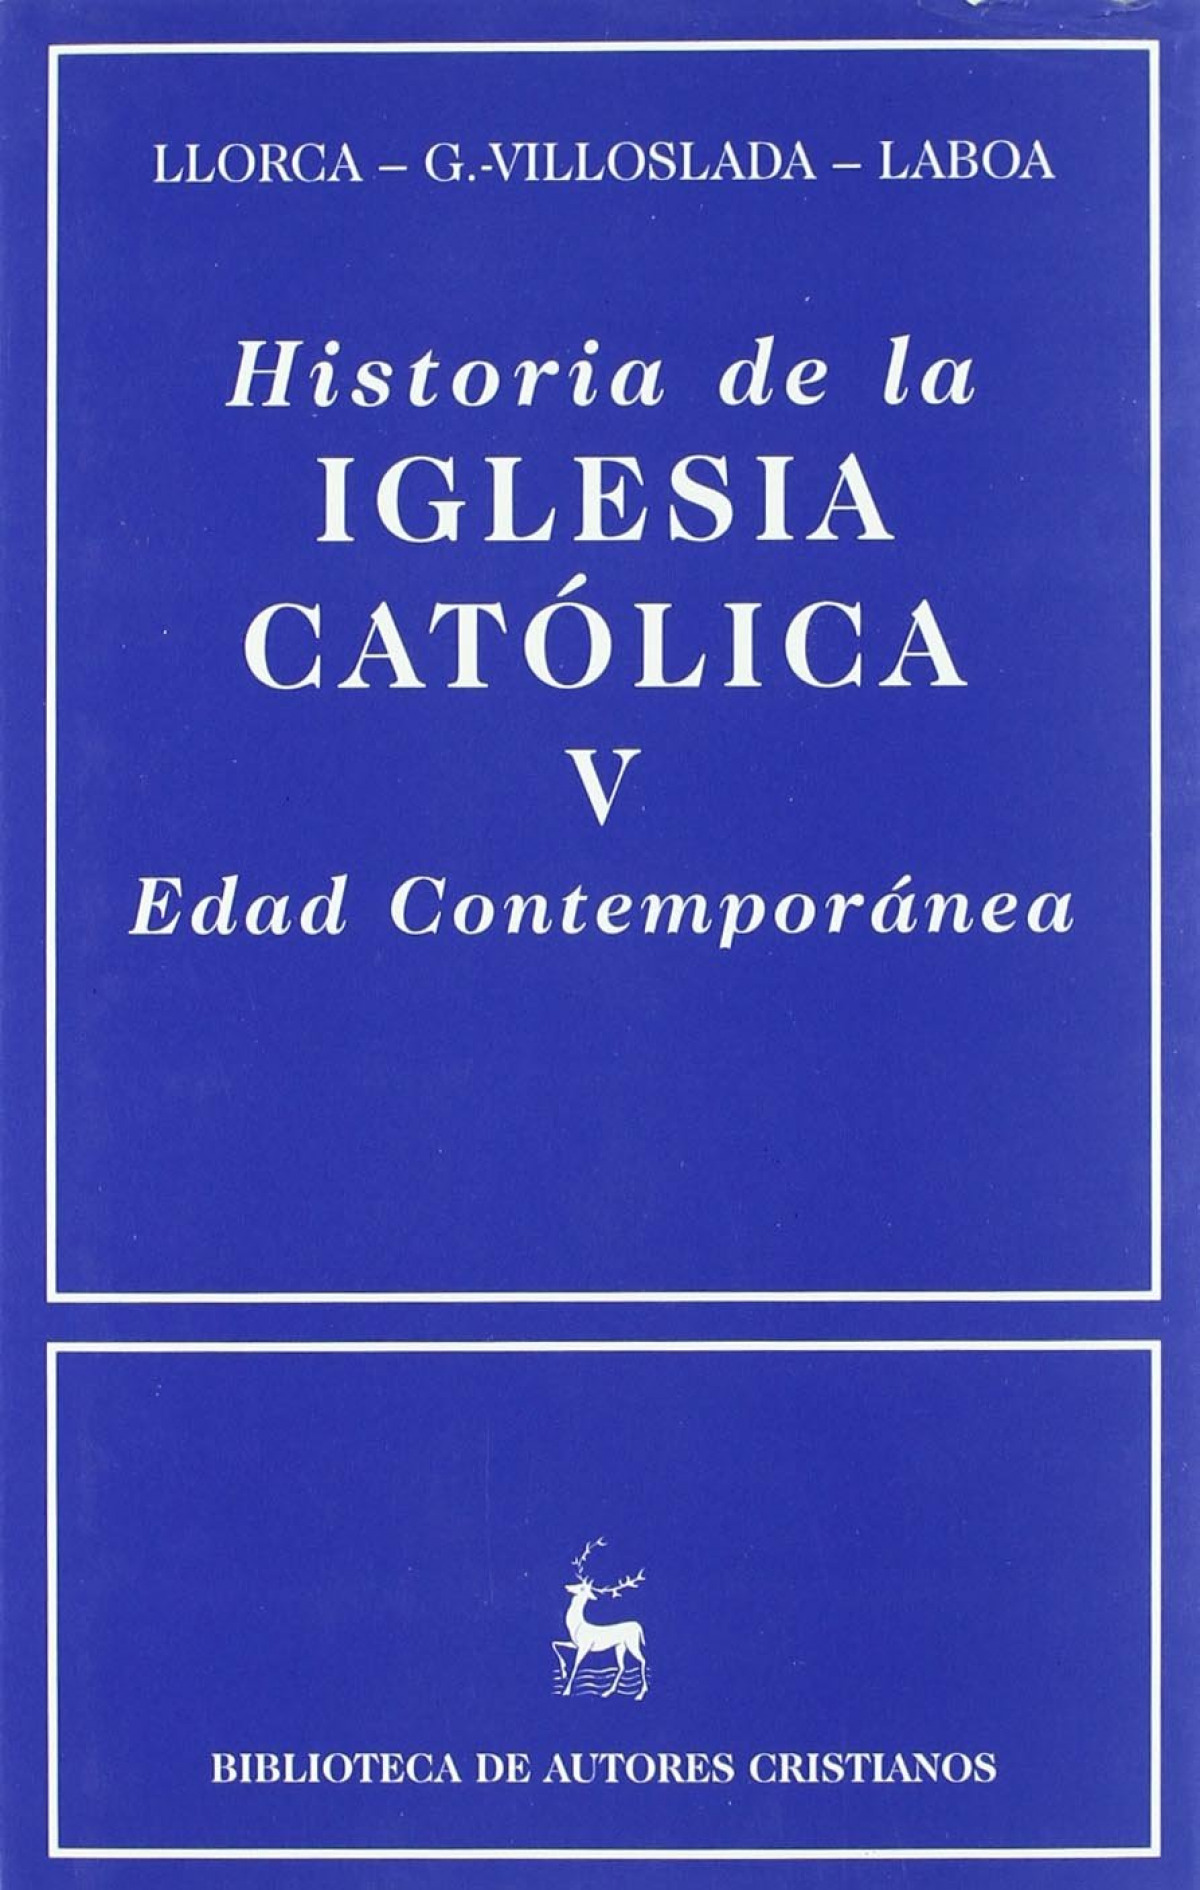 Historia de la Iglesia católica.V: Edad Contemporánea - Laboa Gallego, Juan María